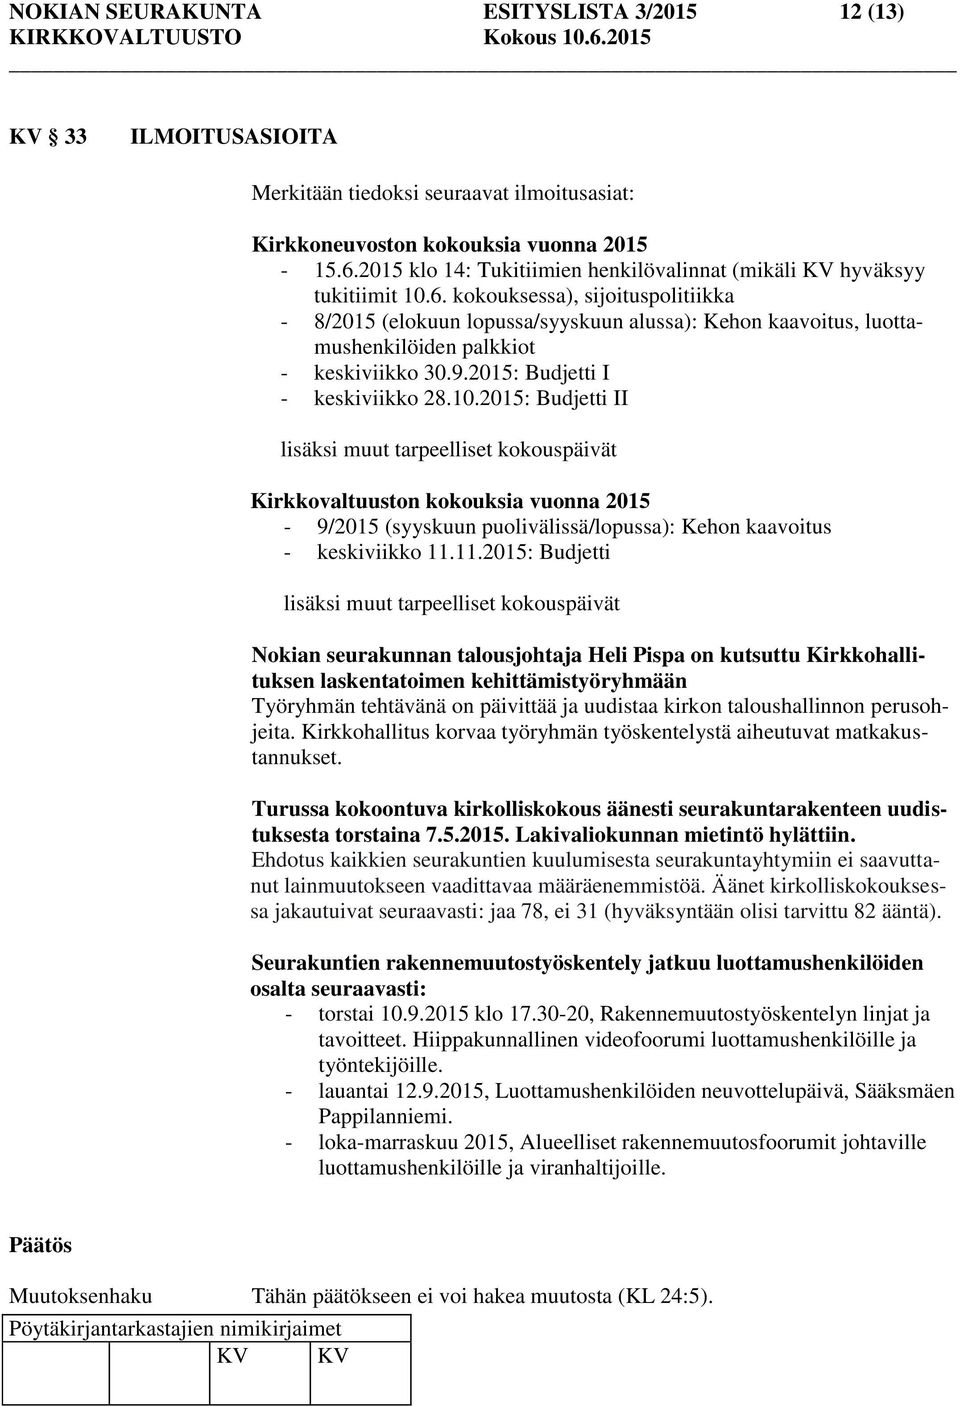 kokouksessa), sijoituspolitiikka - 8/2015 (elokuun lopussa/syyskuun alussa): Kehon kaavoitus, luottamushenkilöiden palkkiot - keskiviikko 30.9.2015: Budjetti I - keskiviikko 28.10.